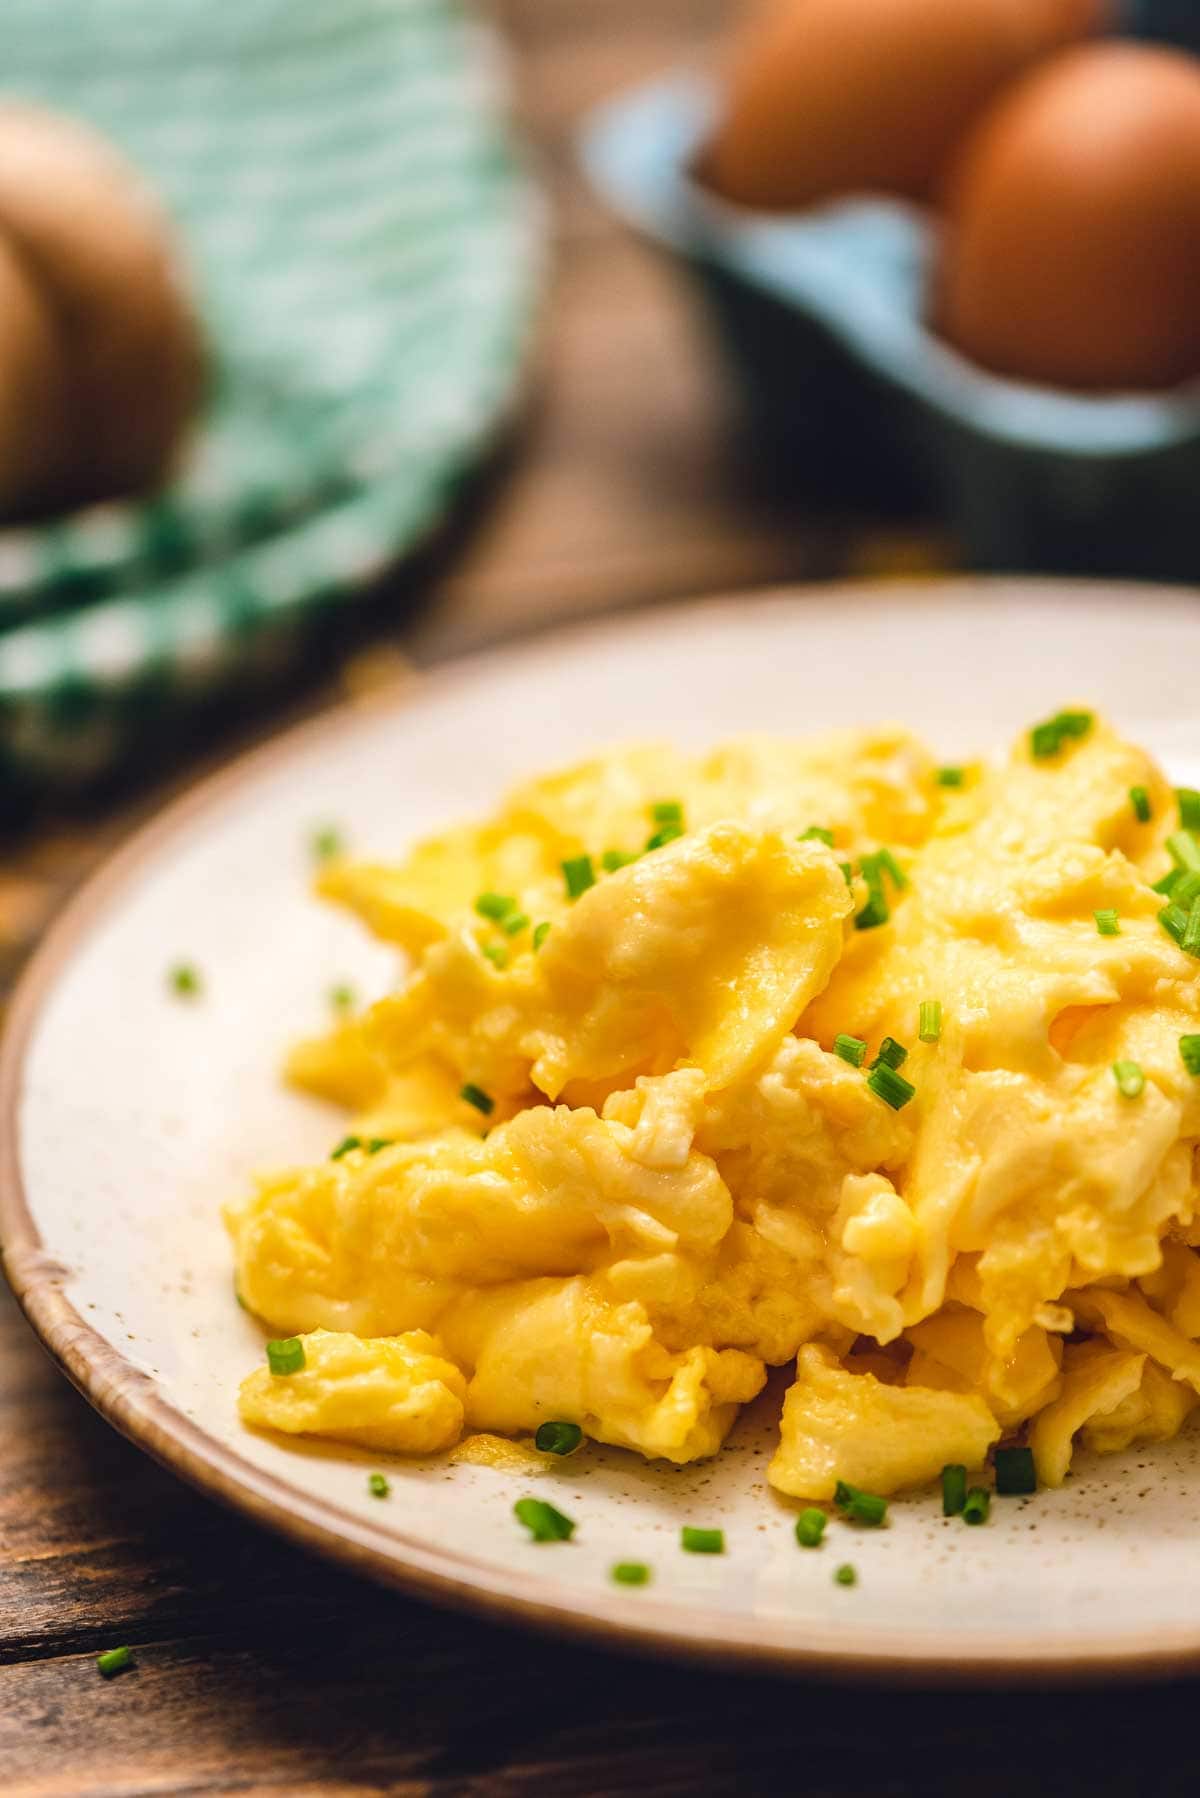 The BEST Scrambled Eggs - Light & Fluffy! - Julie's Eats & Treats ®